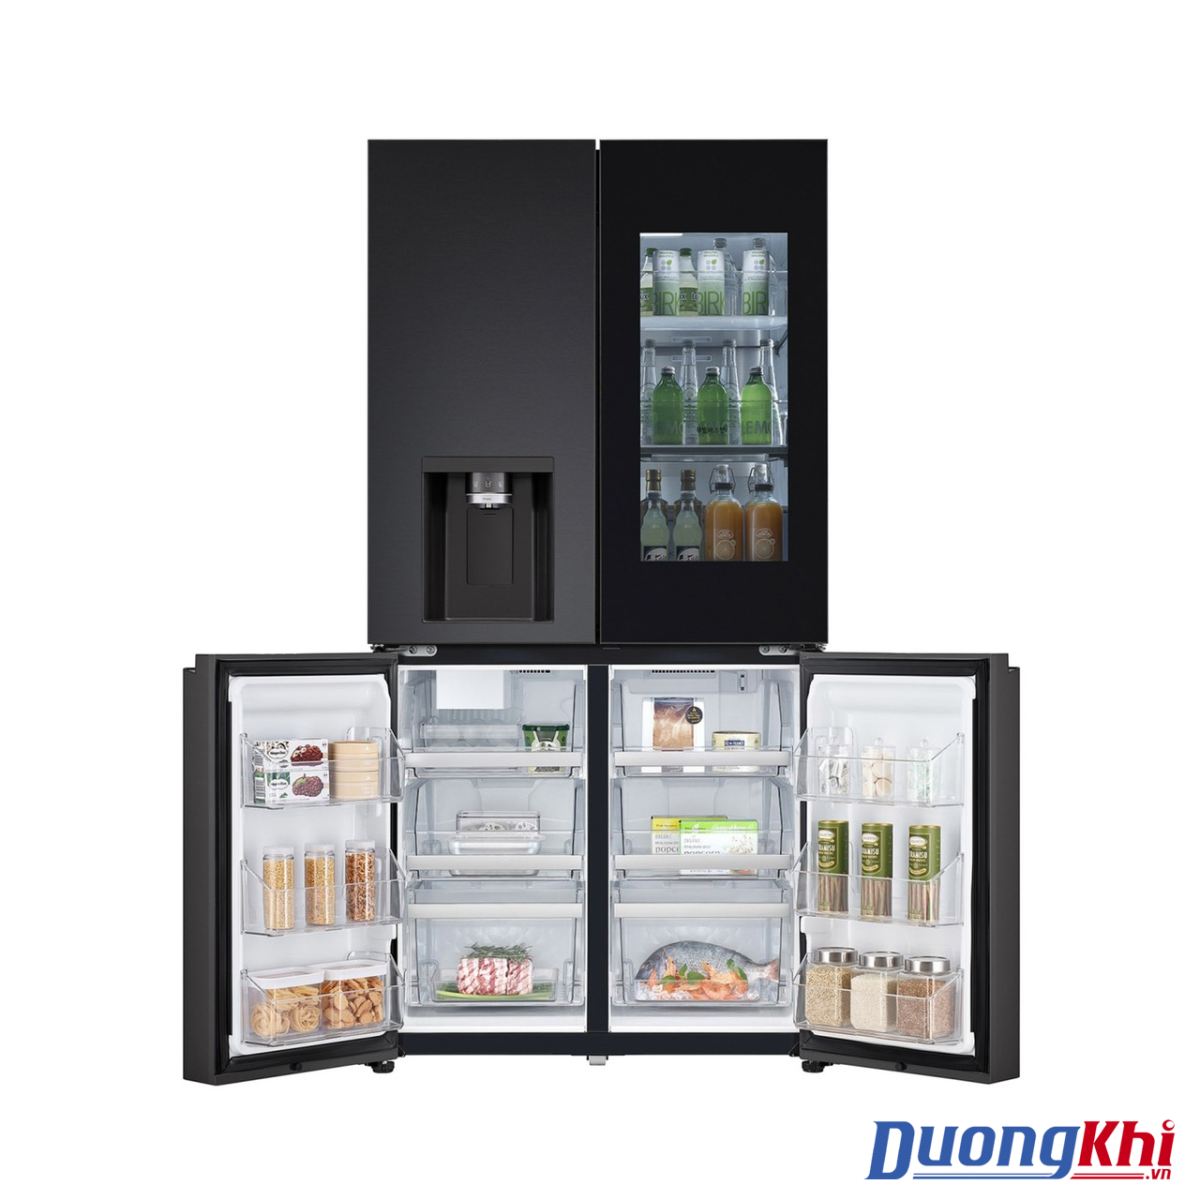 Tủ lạnh LG Dios Side by side màu đen - bạc 820L 7